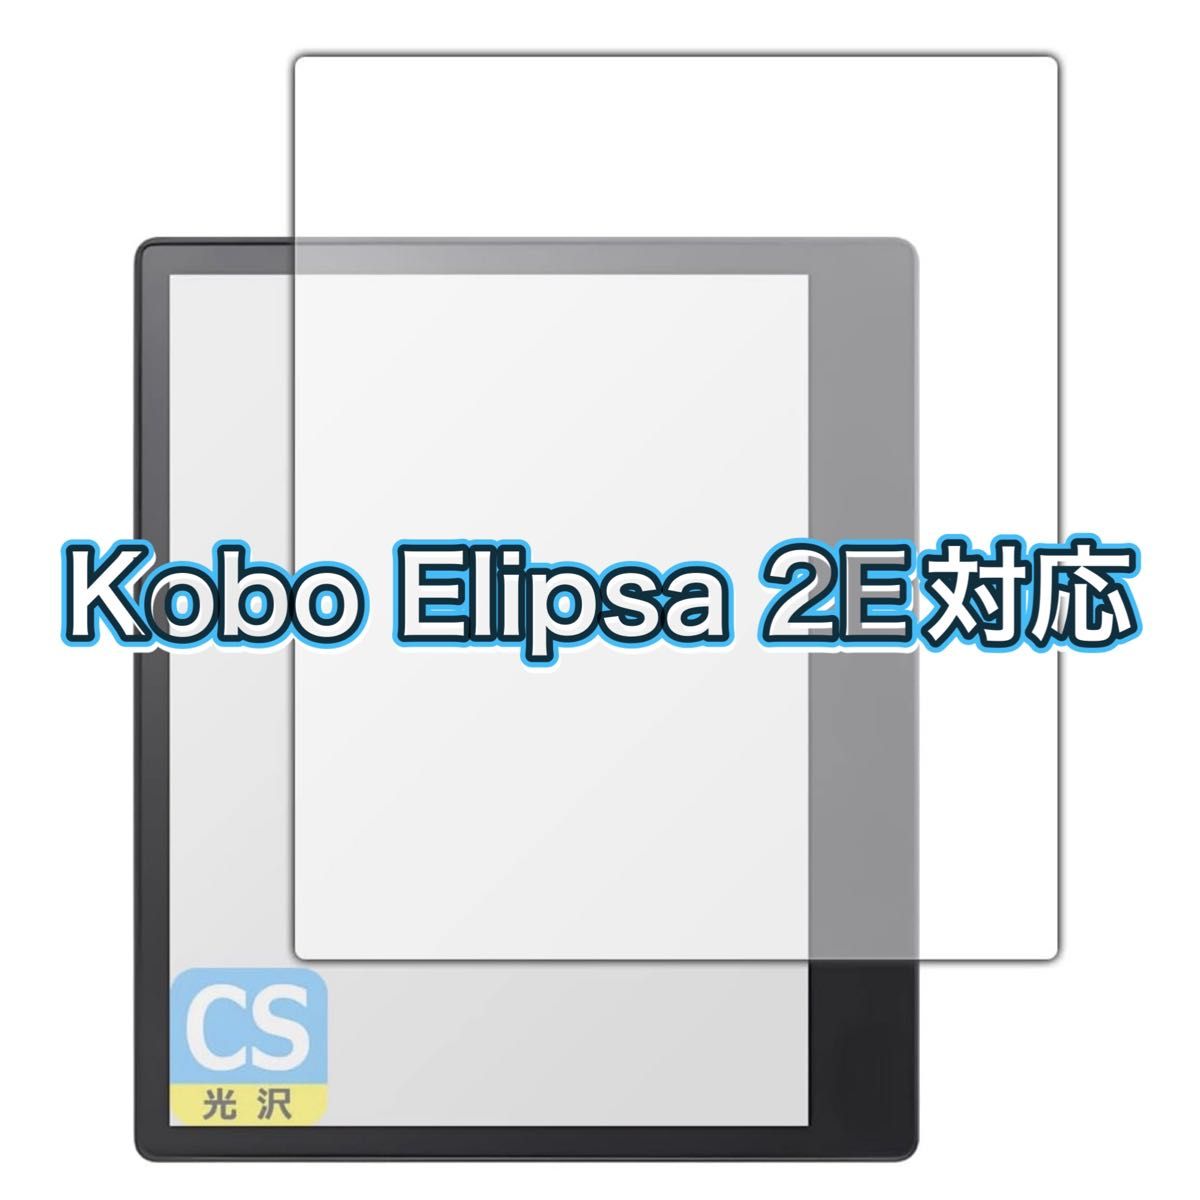 【日本製】Kobo Elipsa 2E対応 保護 フィルム 光沢 透明 画面保護